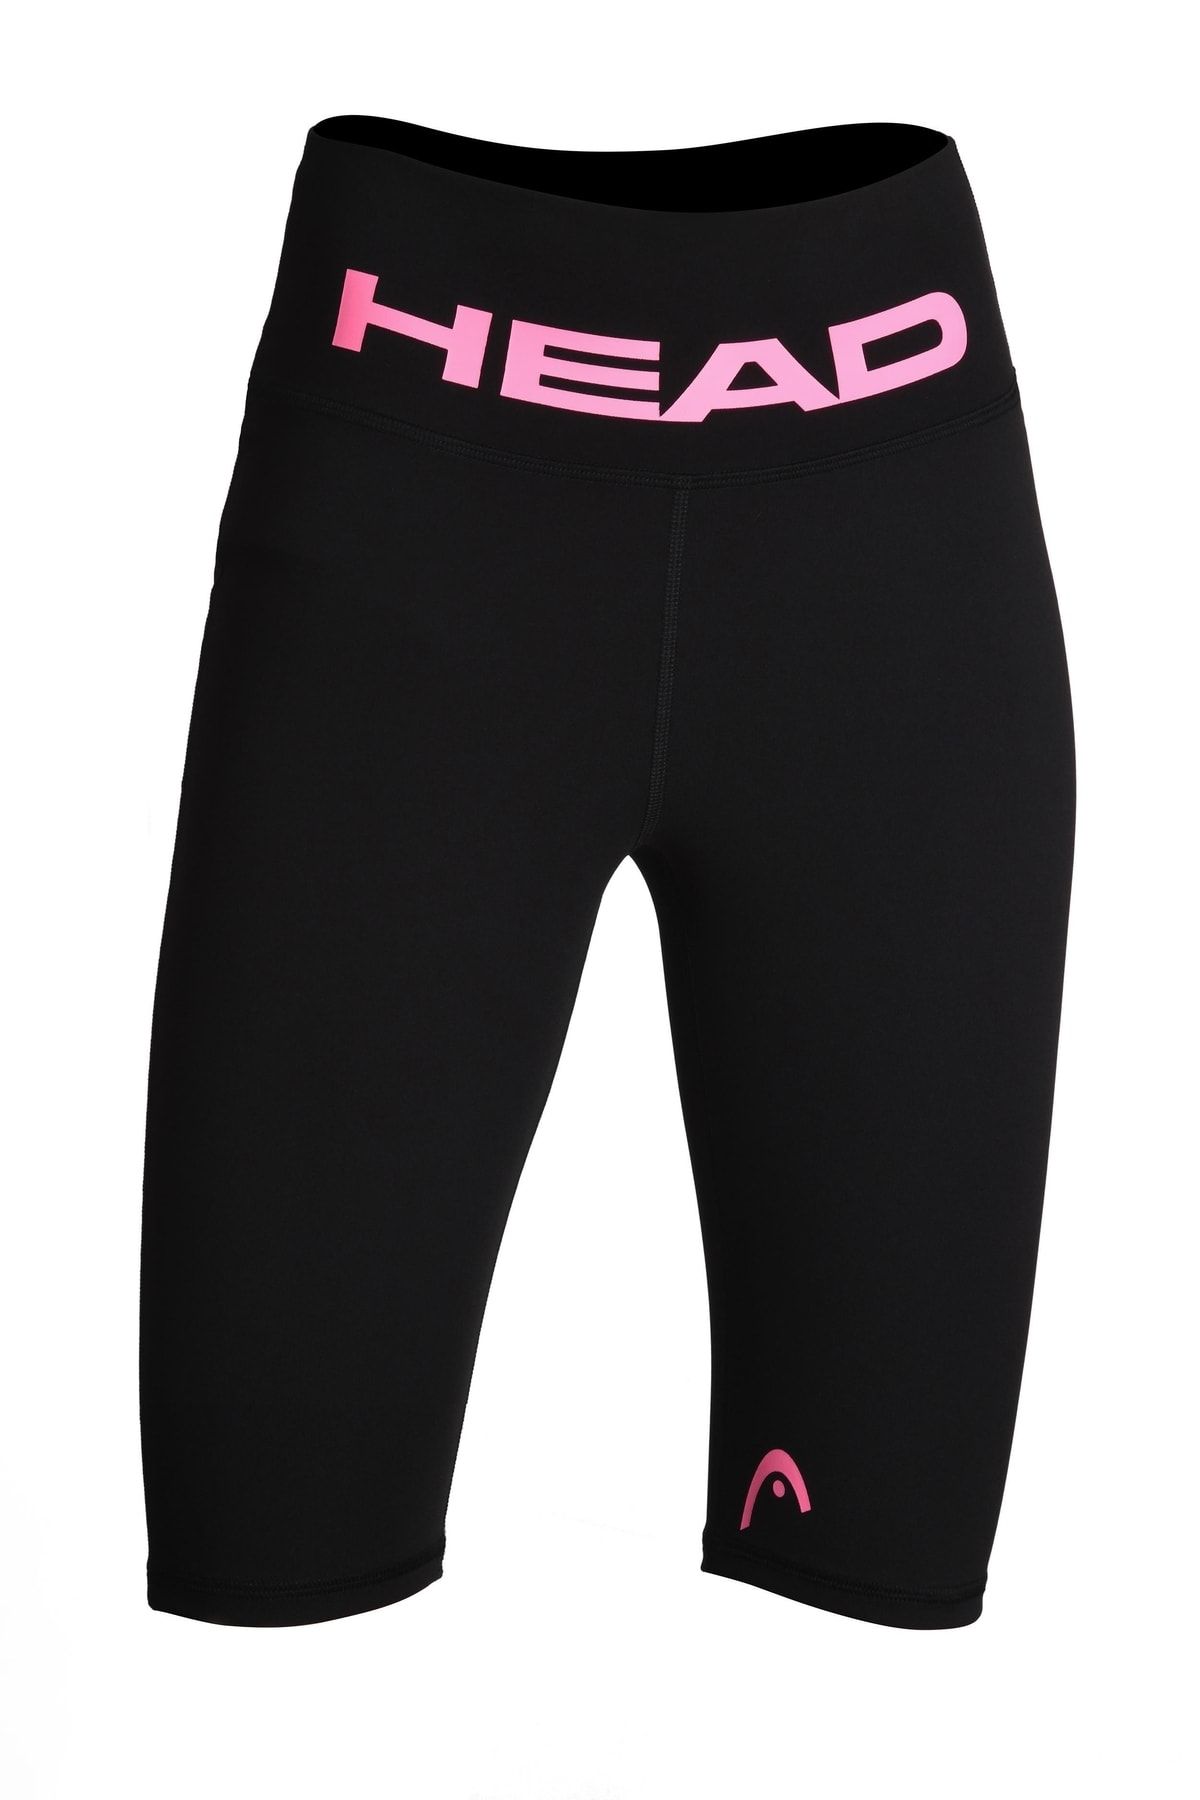 Head Kadın Pembe Logo Baskı Yüksek Bel Comfort Esnek Toparlayıcı Sporcu Diz Üstü Biker Tayt